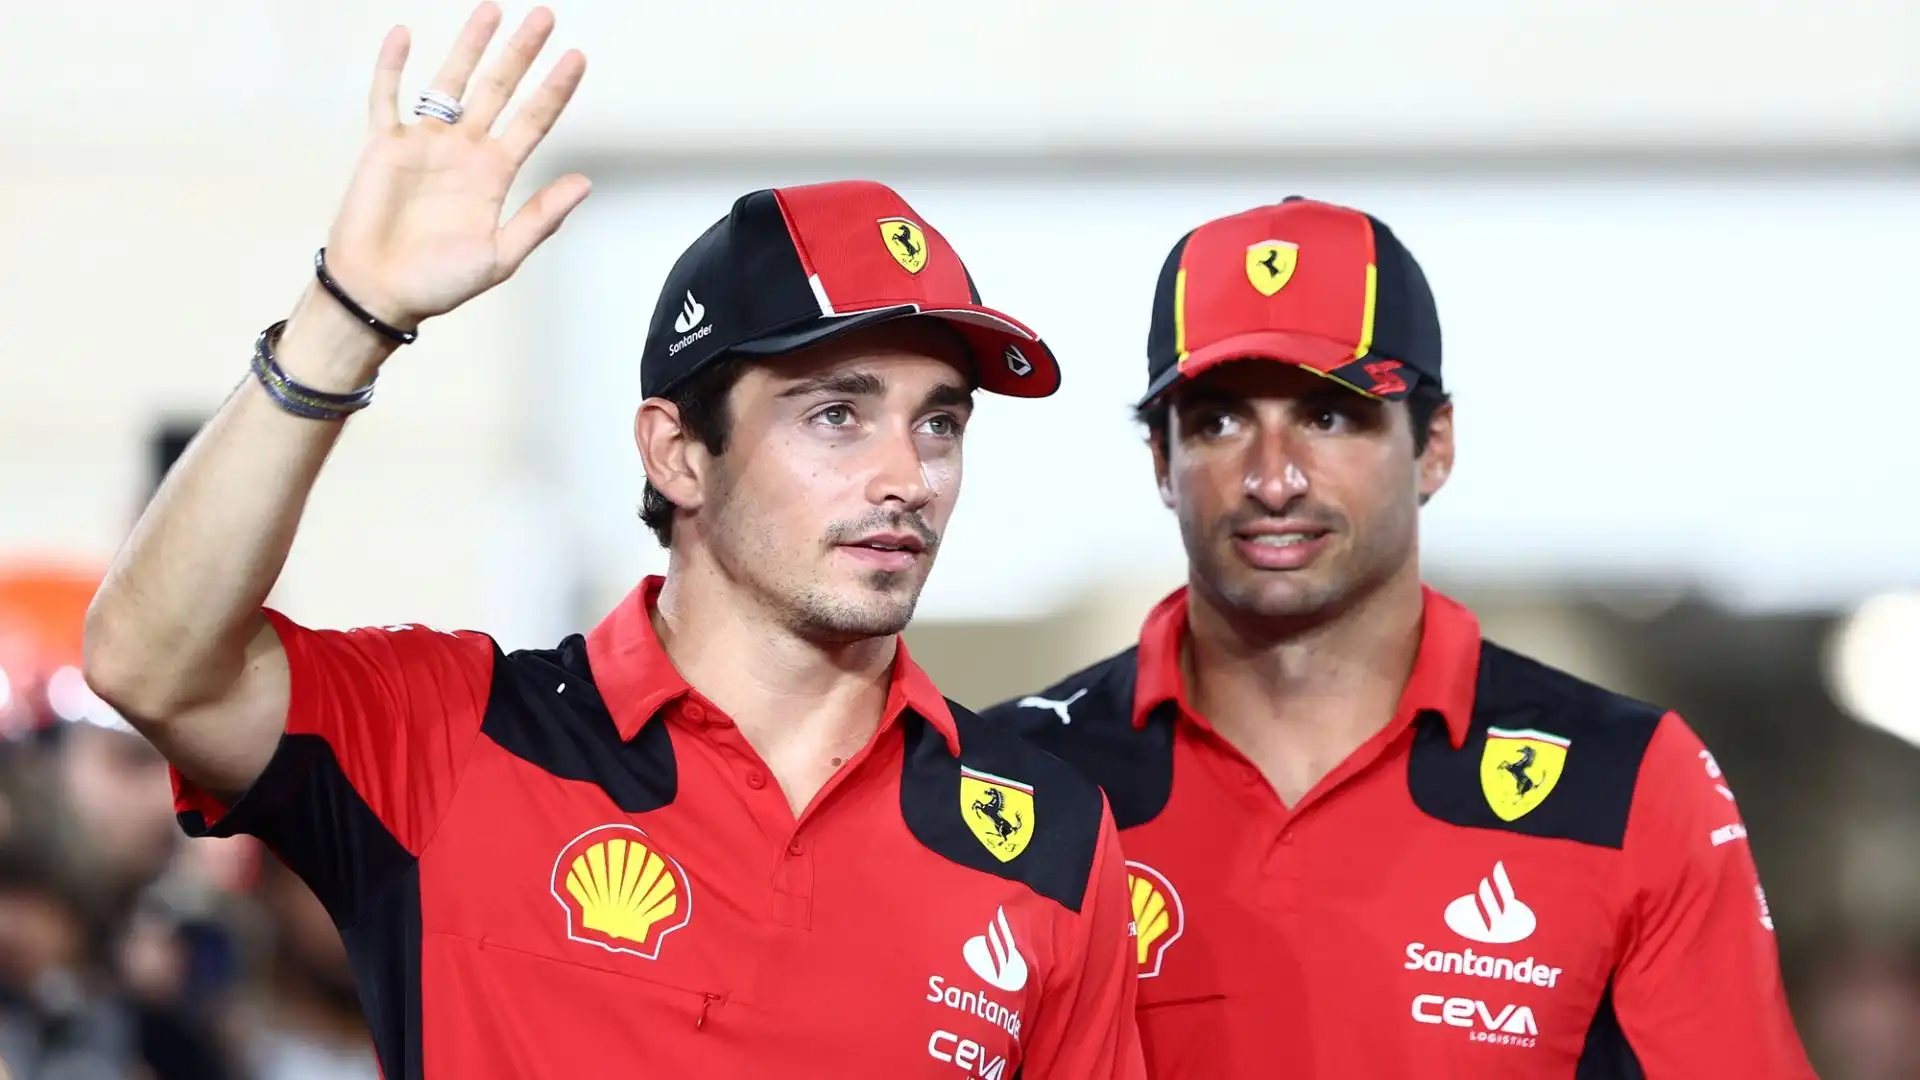 Il rallentamento nella trattativa del rinnovo del contratto tra la Ferrari e Carlos Sainz sta provocando diverse indiscrezioni